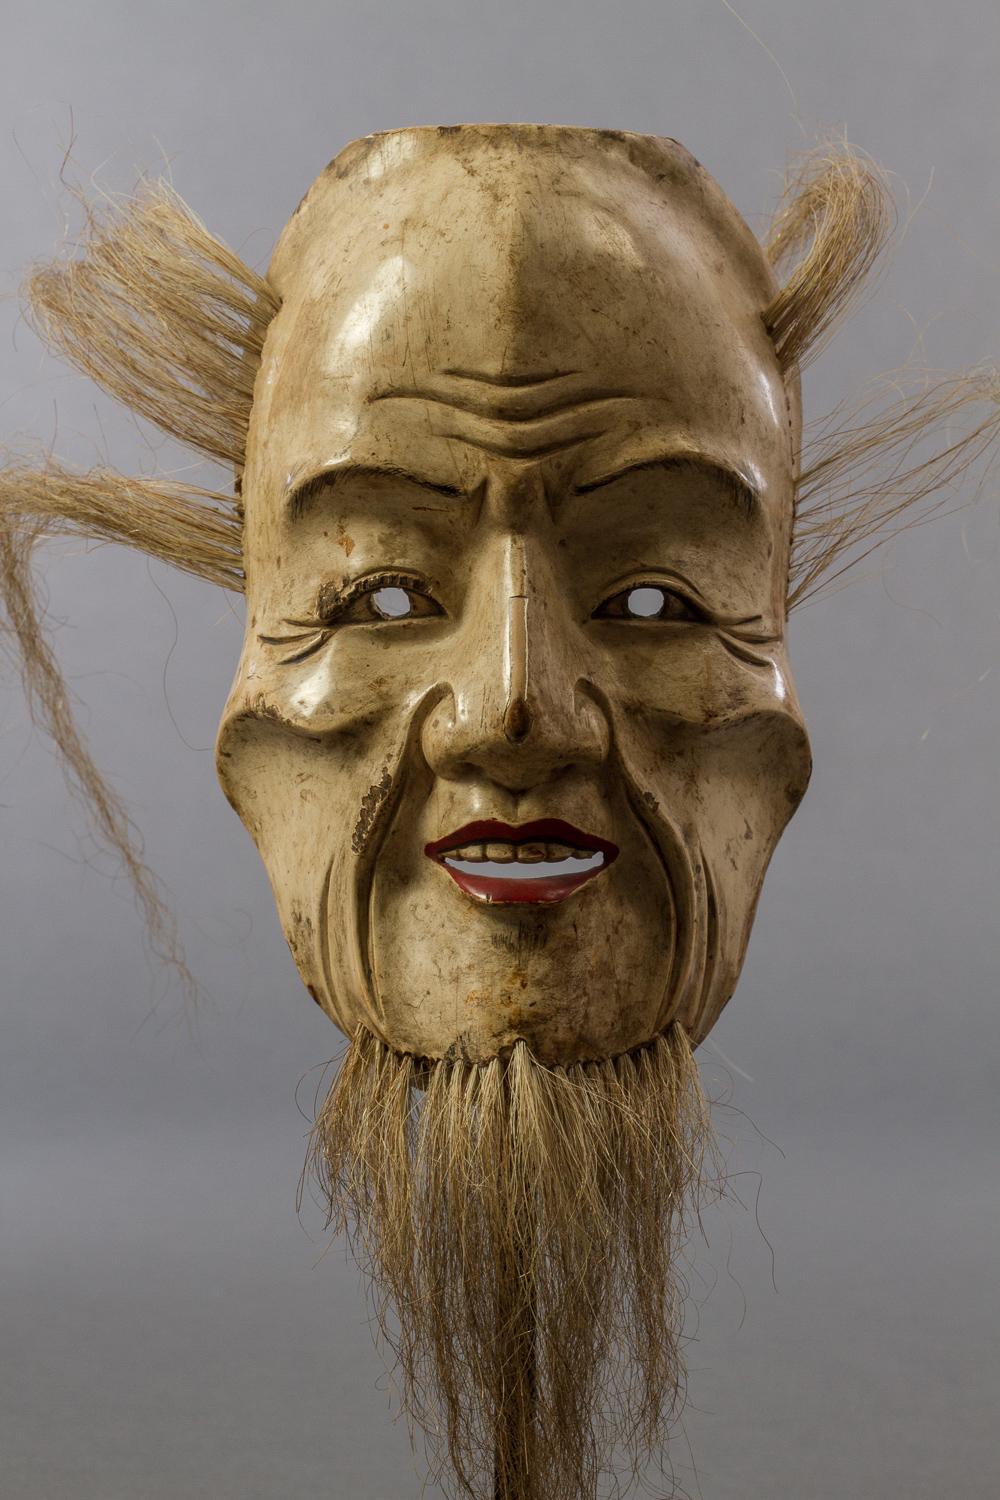 Masque de noh japonais en bois du début du 19e siècle. Ce masque est livré dans sa boîte de rangement d'origine en bois de kiri, qui est signée et datée : Coran, 1811 (période Edo). La boîte décrit également le masque comme faisant partie de